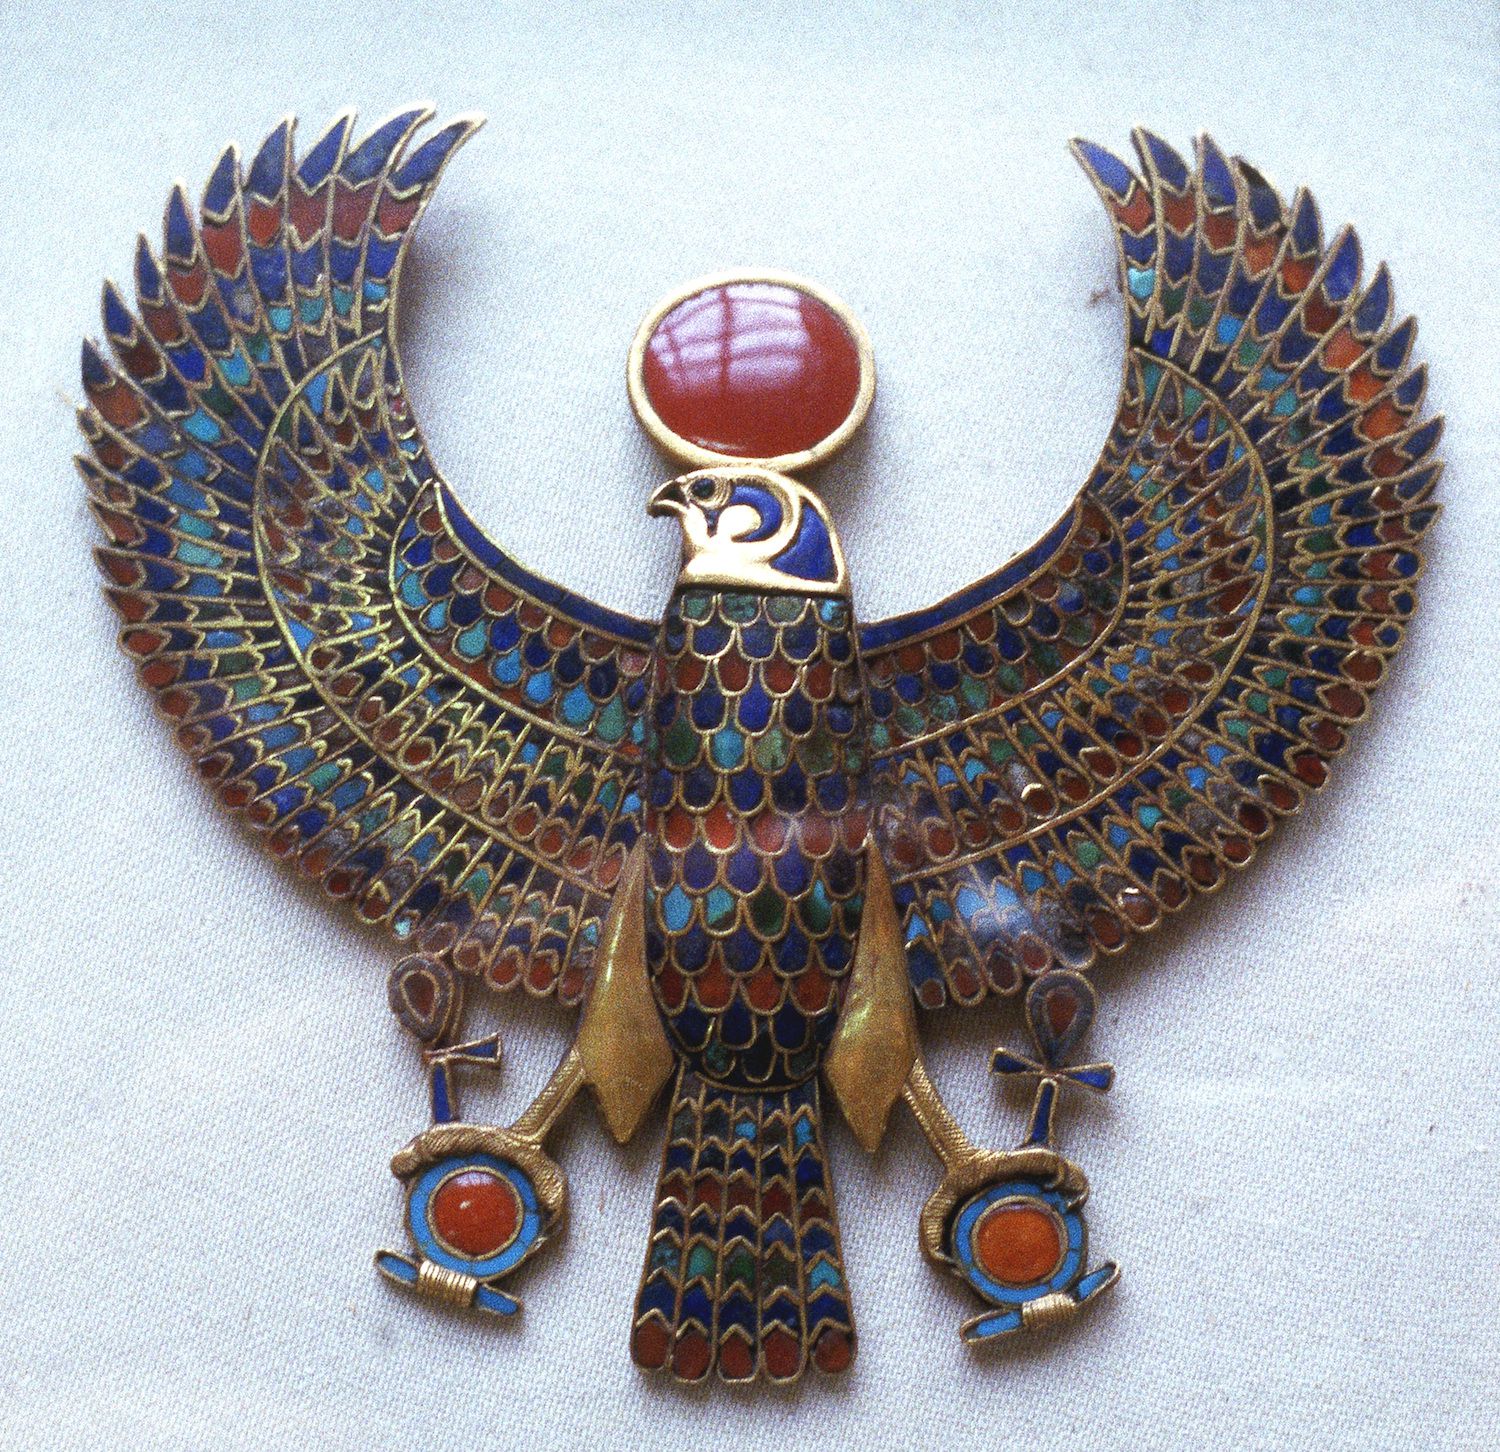 Aprenda sobre Horus, dios egipcio de la realeza, la guerra y el cielo